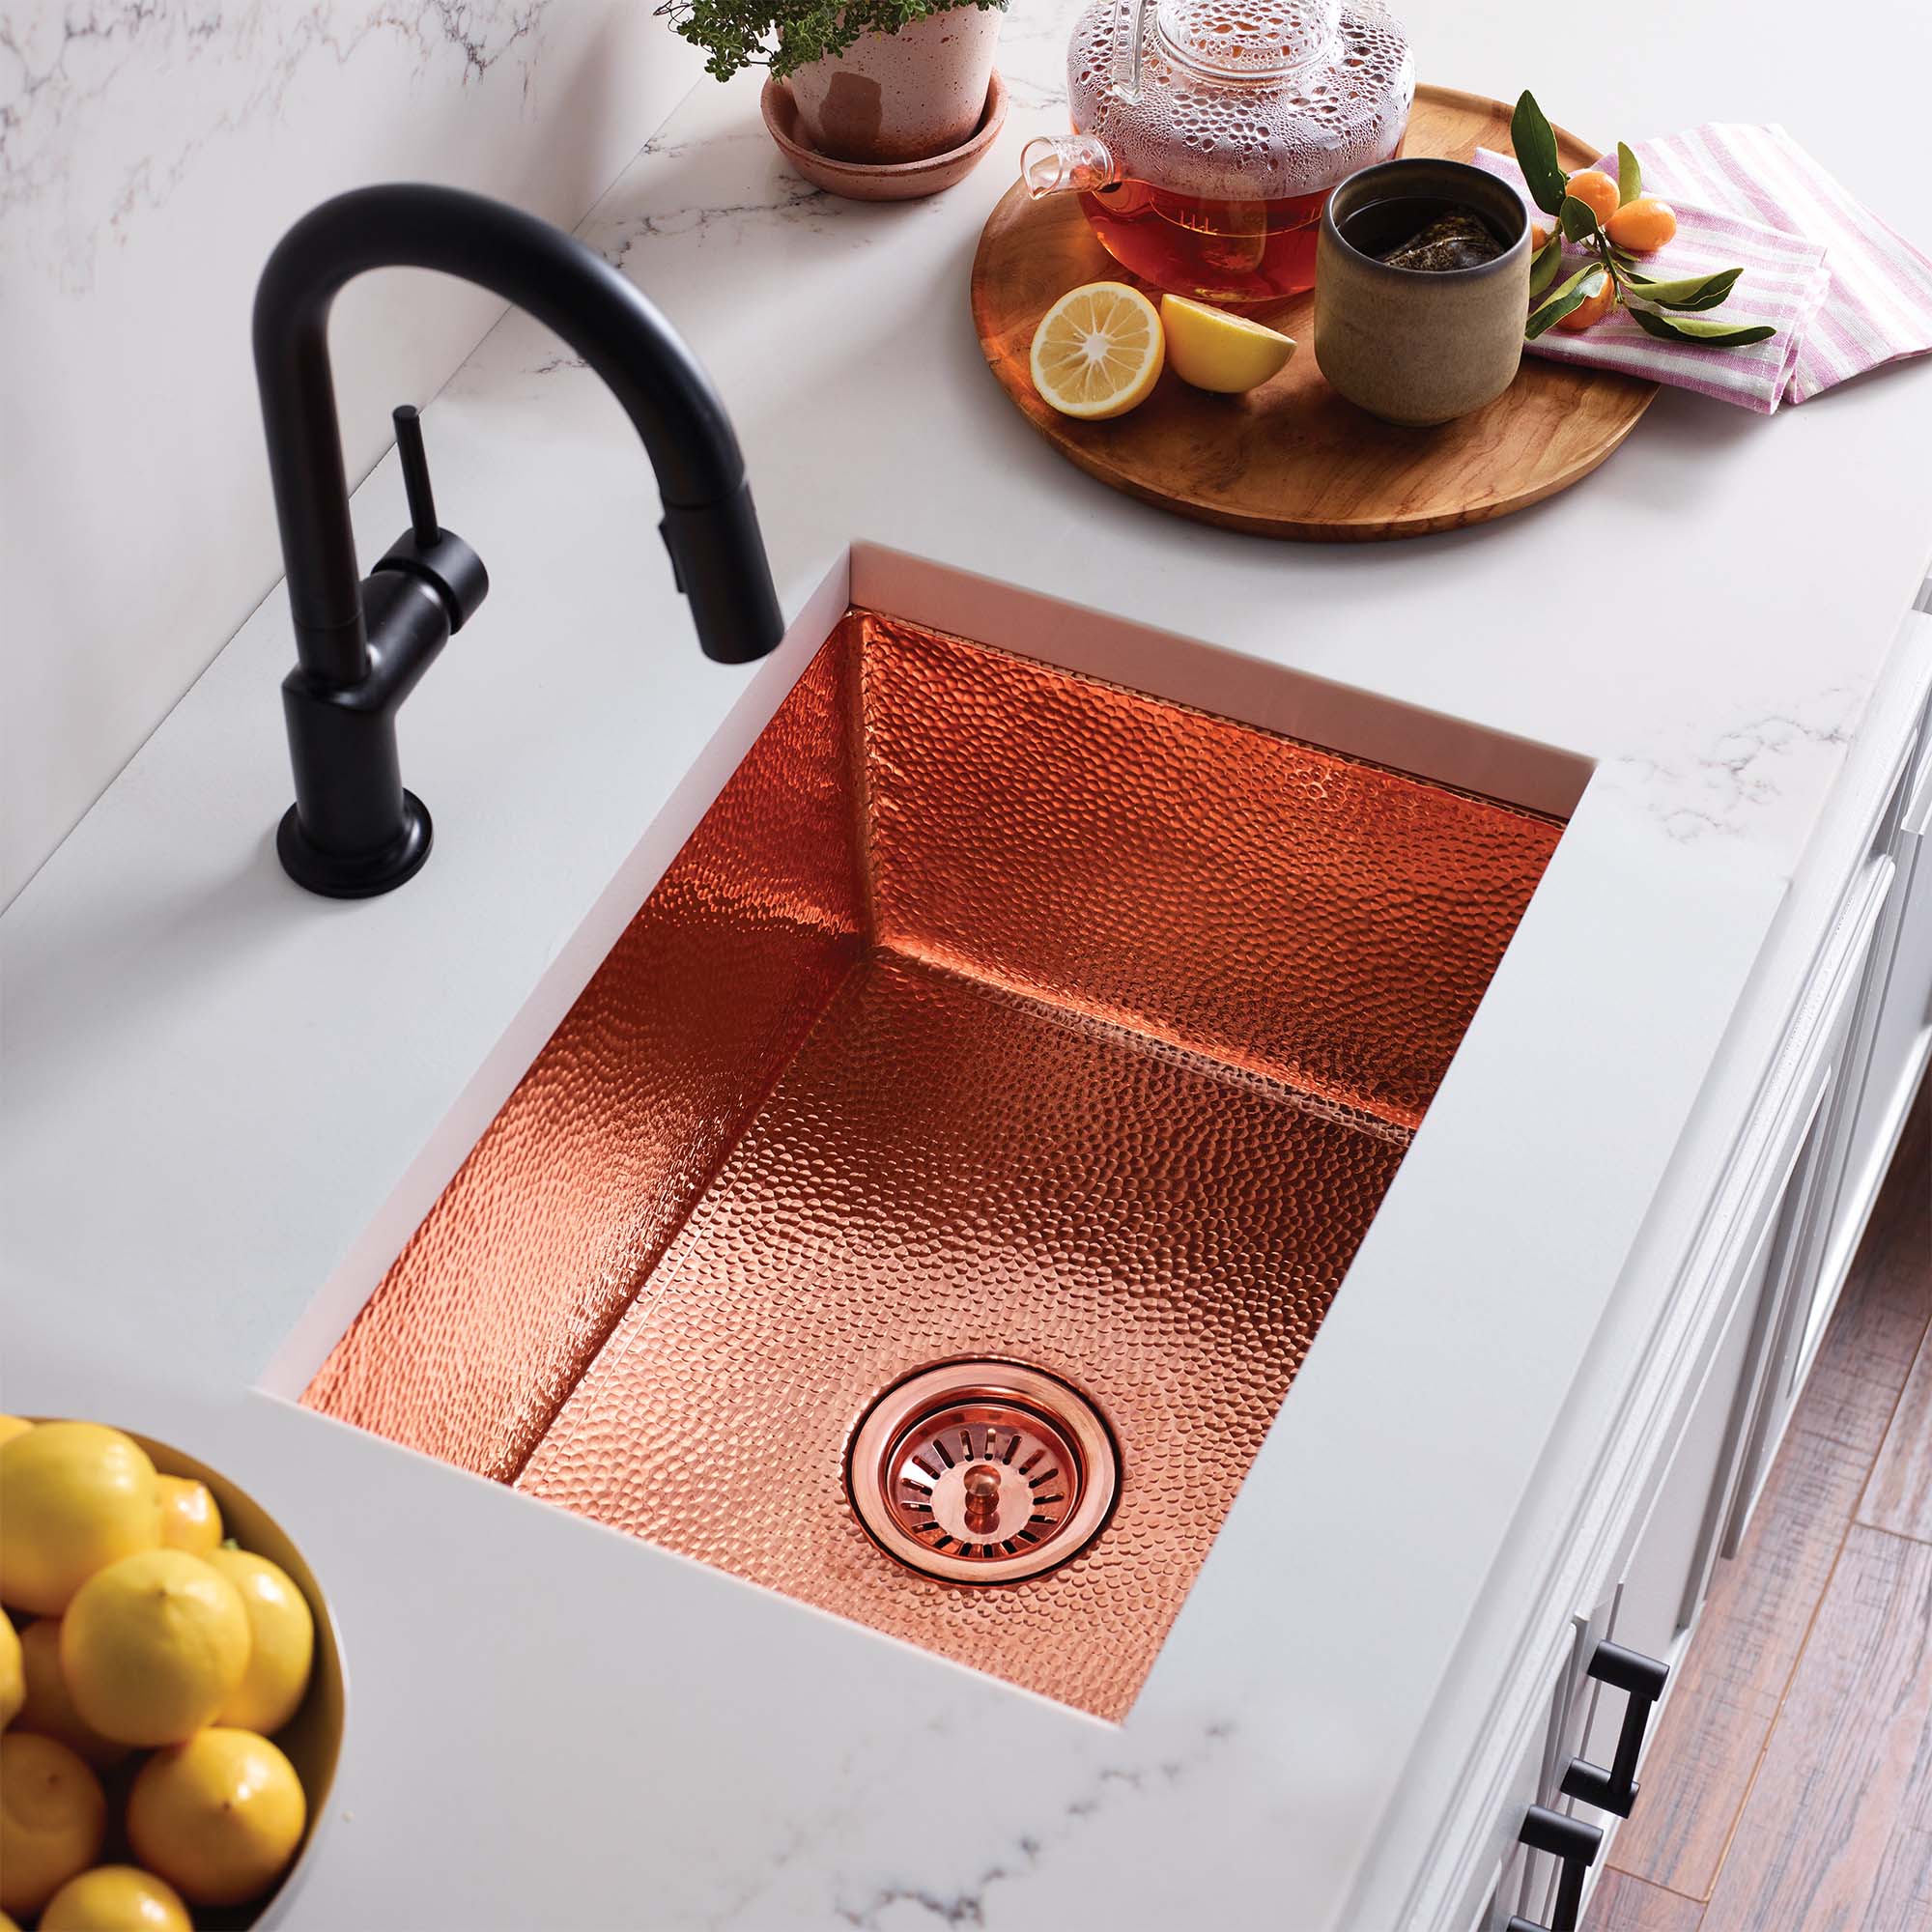 https://nativetrailshome.com/wp-content/uploads/Images/Kitchen_Sinks/Cocina-21-Copper-Kitchen-Sink-Polished-Copper-CPK478-1.jpg